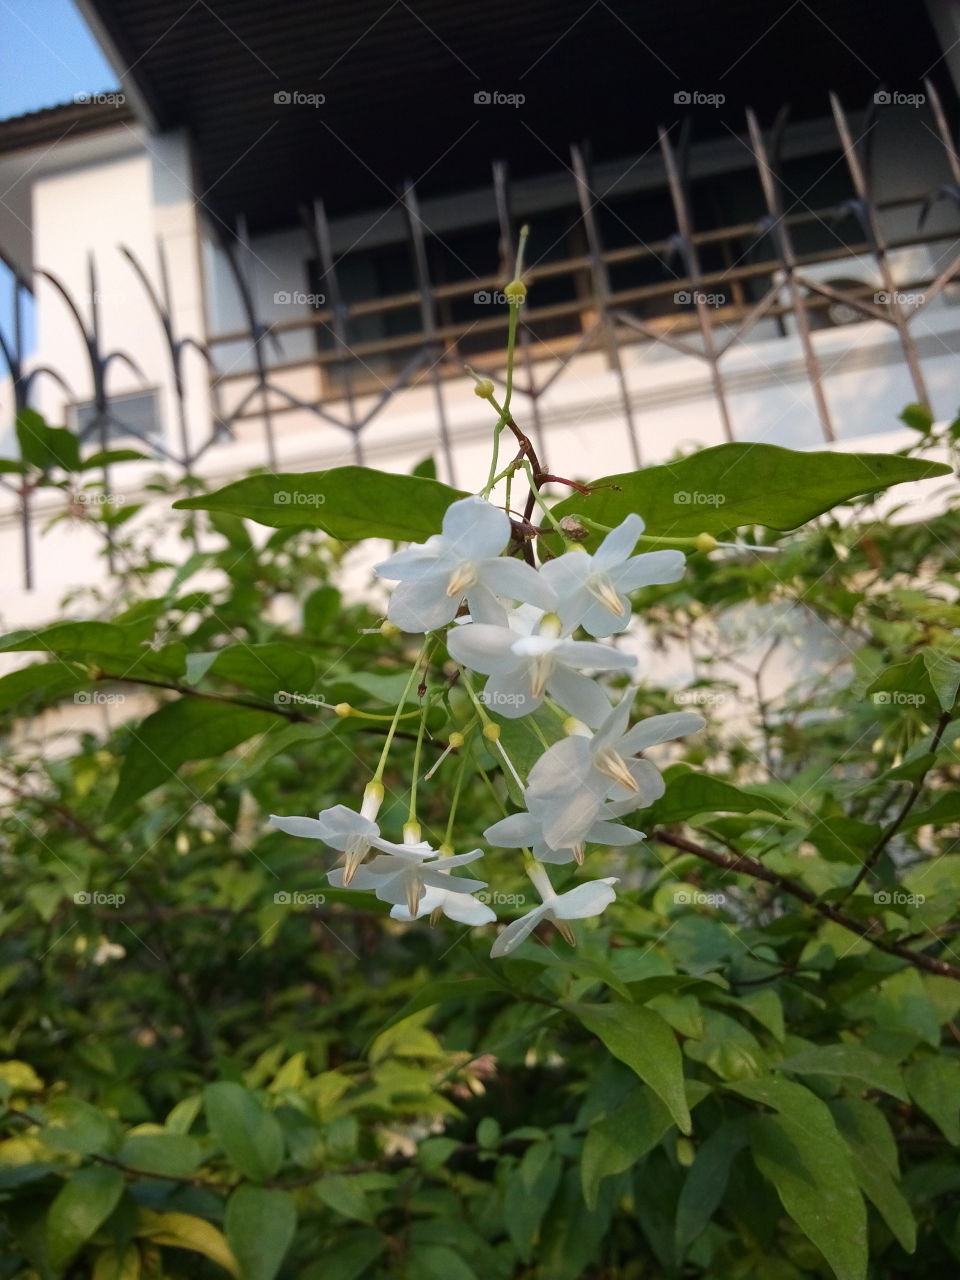 
Wrightia religiosa Benth.. White flowers.Wrightia religiosa Benth.